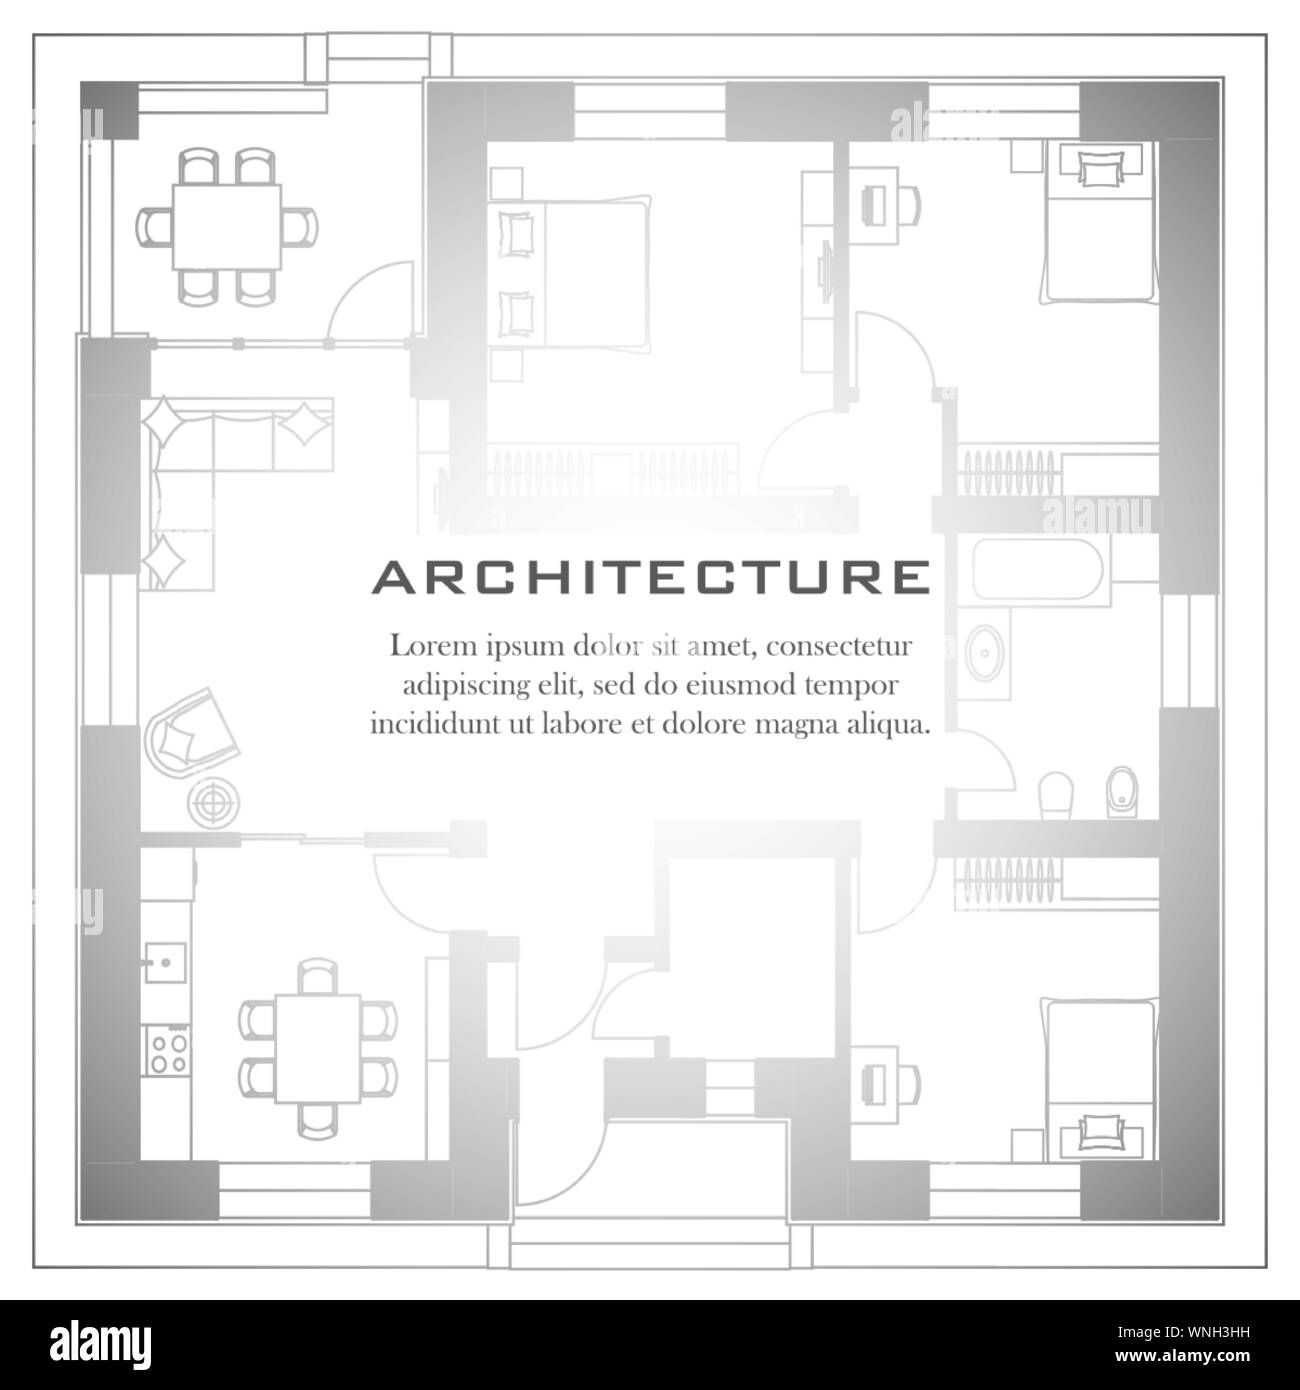 Architektonischen Hintergrund. Teil des architektonischen Projekt, architektonischen Plan eines Wohnhauses. Schwarze und weiße Vektor-illustration EPS 10. Stock Vektor